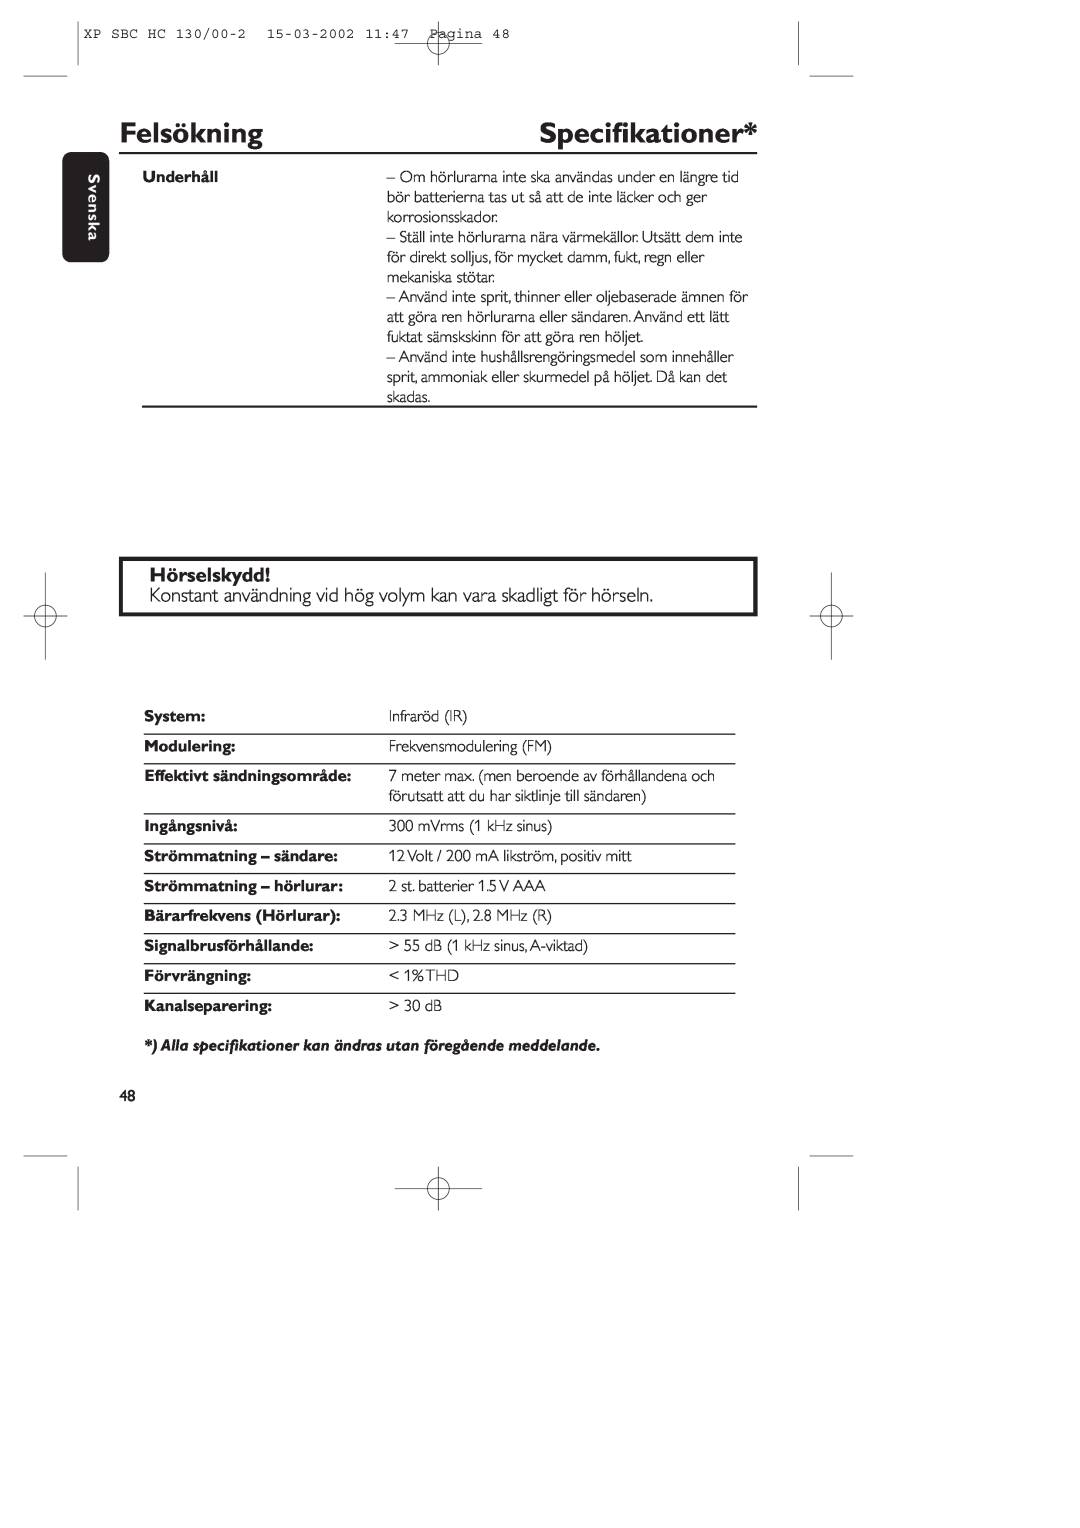 Philips SBC HC130 manual Felsökning, Speciﬁkationer, Hörselskydd, Svenska, Underhåll, System, Modulering, Ingångsnivå 